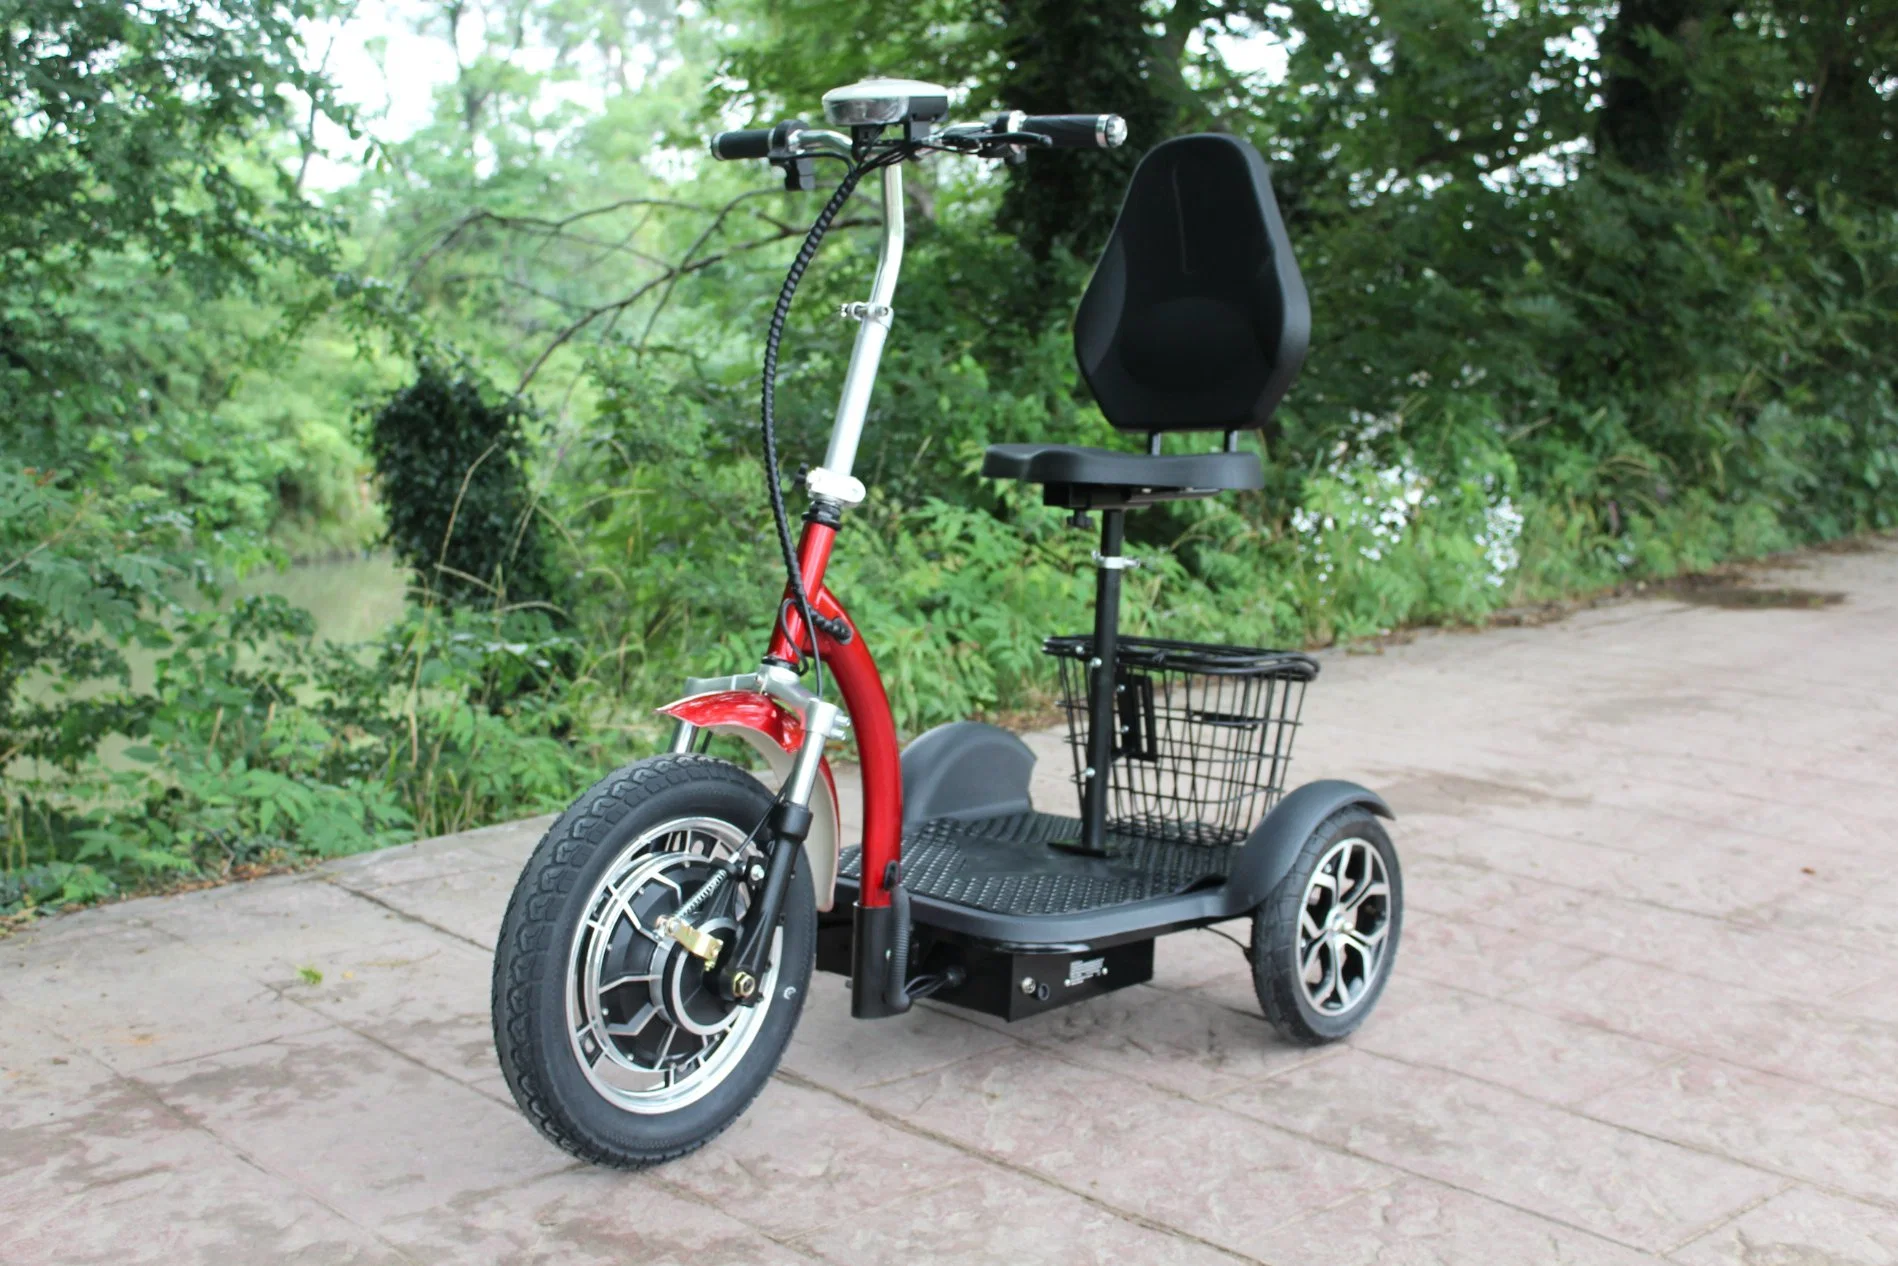 Zappy Vente chaude 3 roues scooter électrique fabriqué en Chine